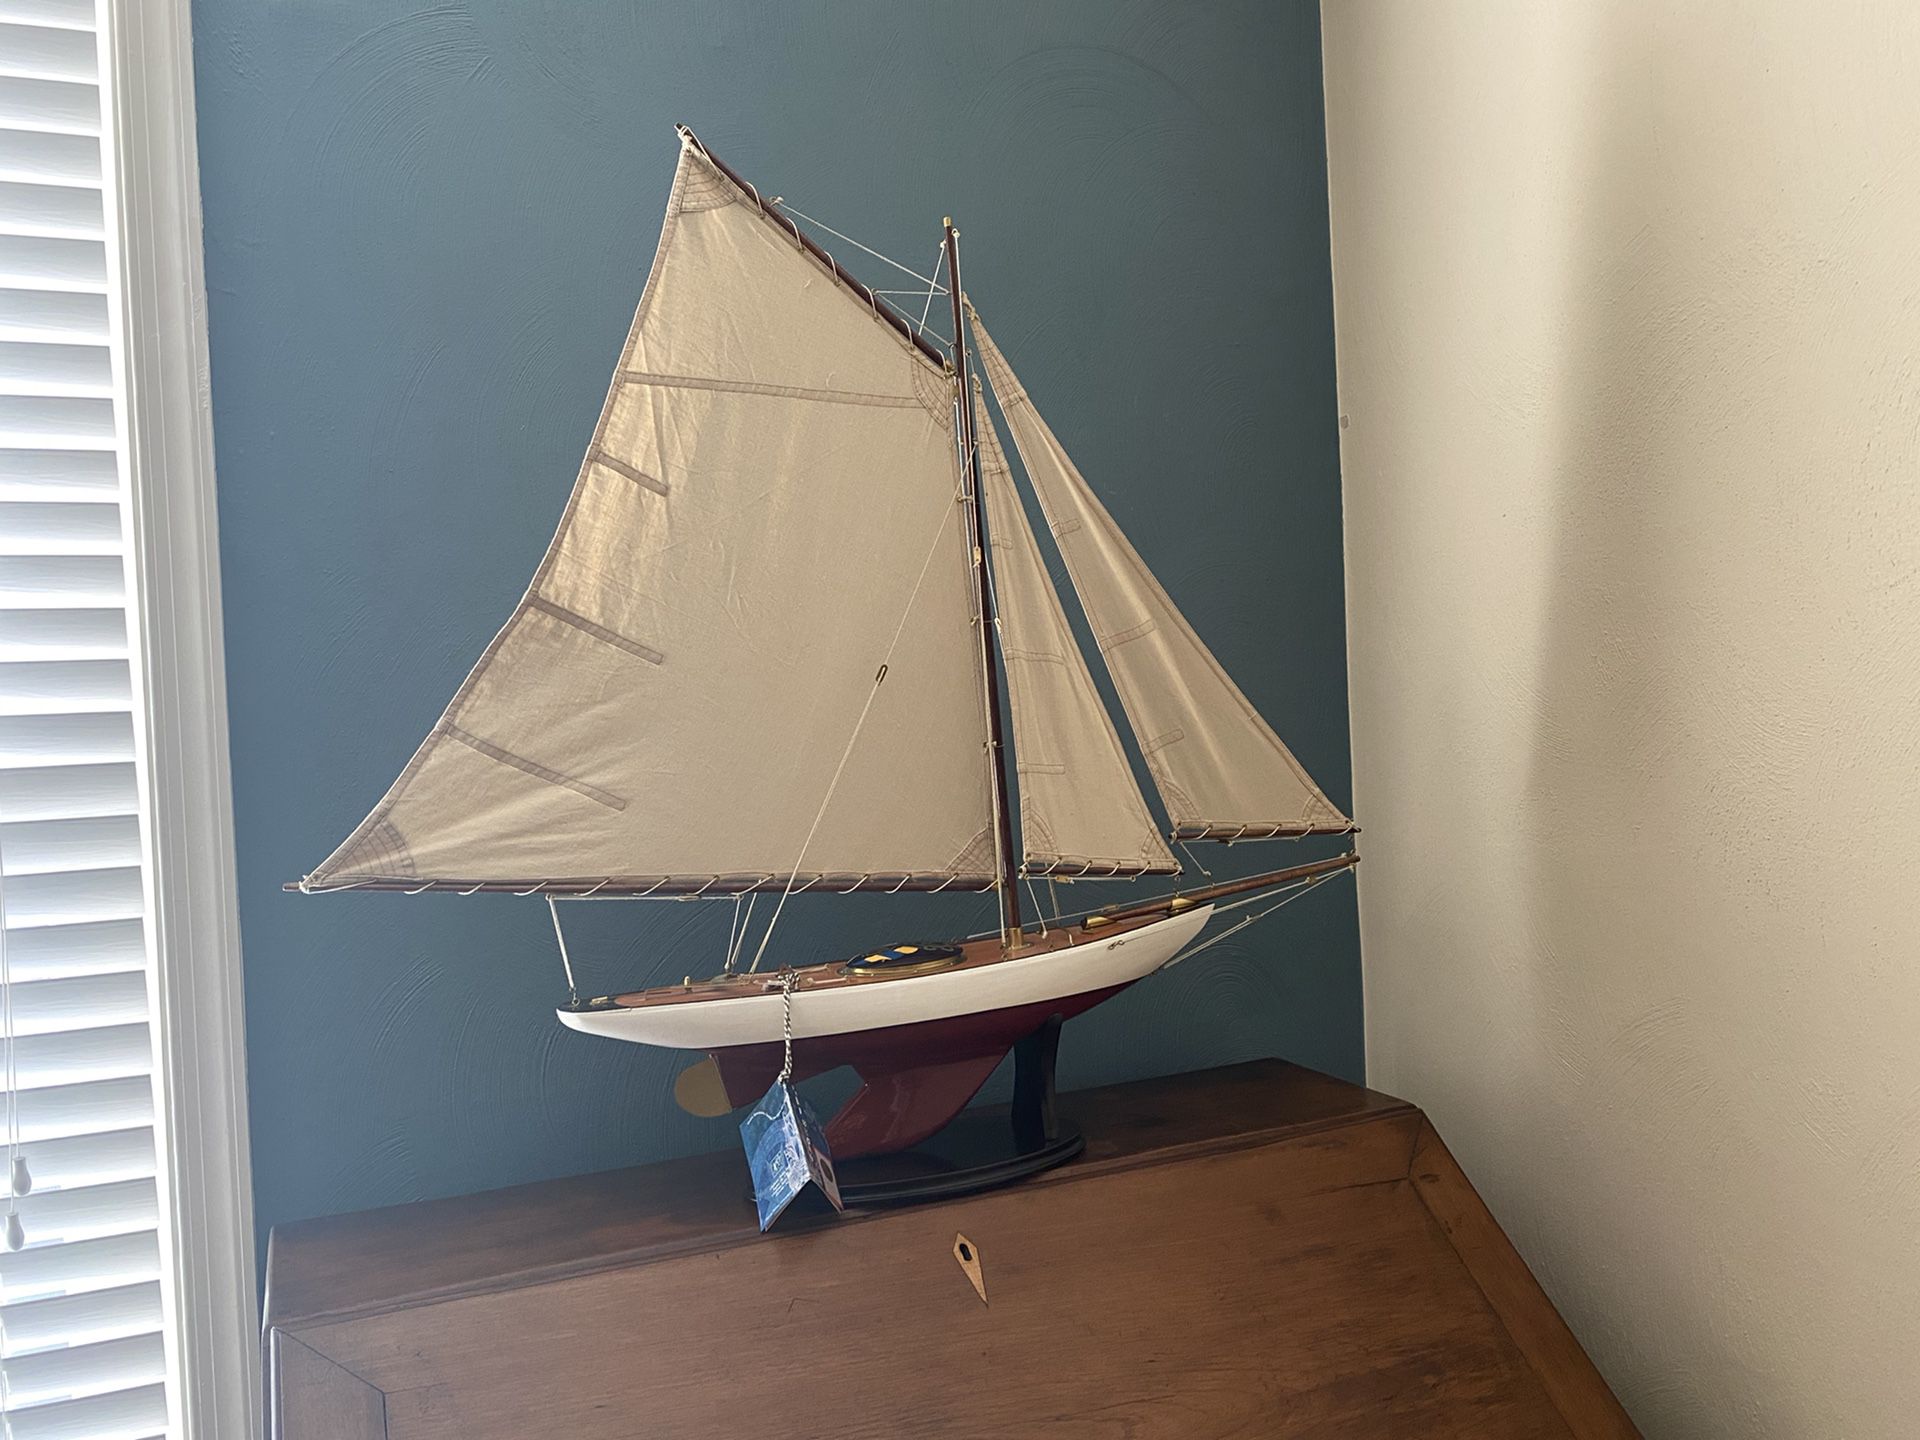 3 Sail Sailboat Model